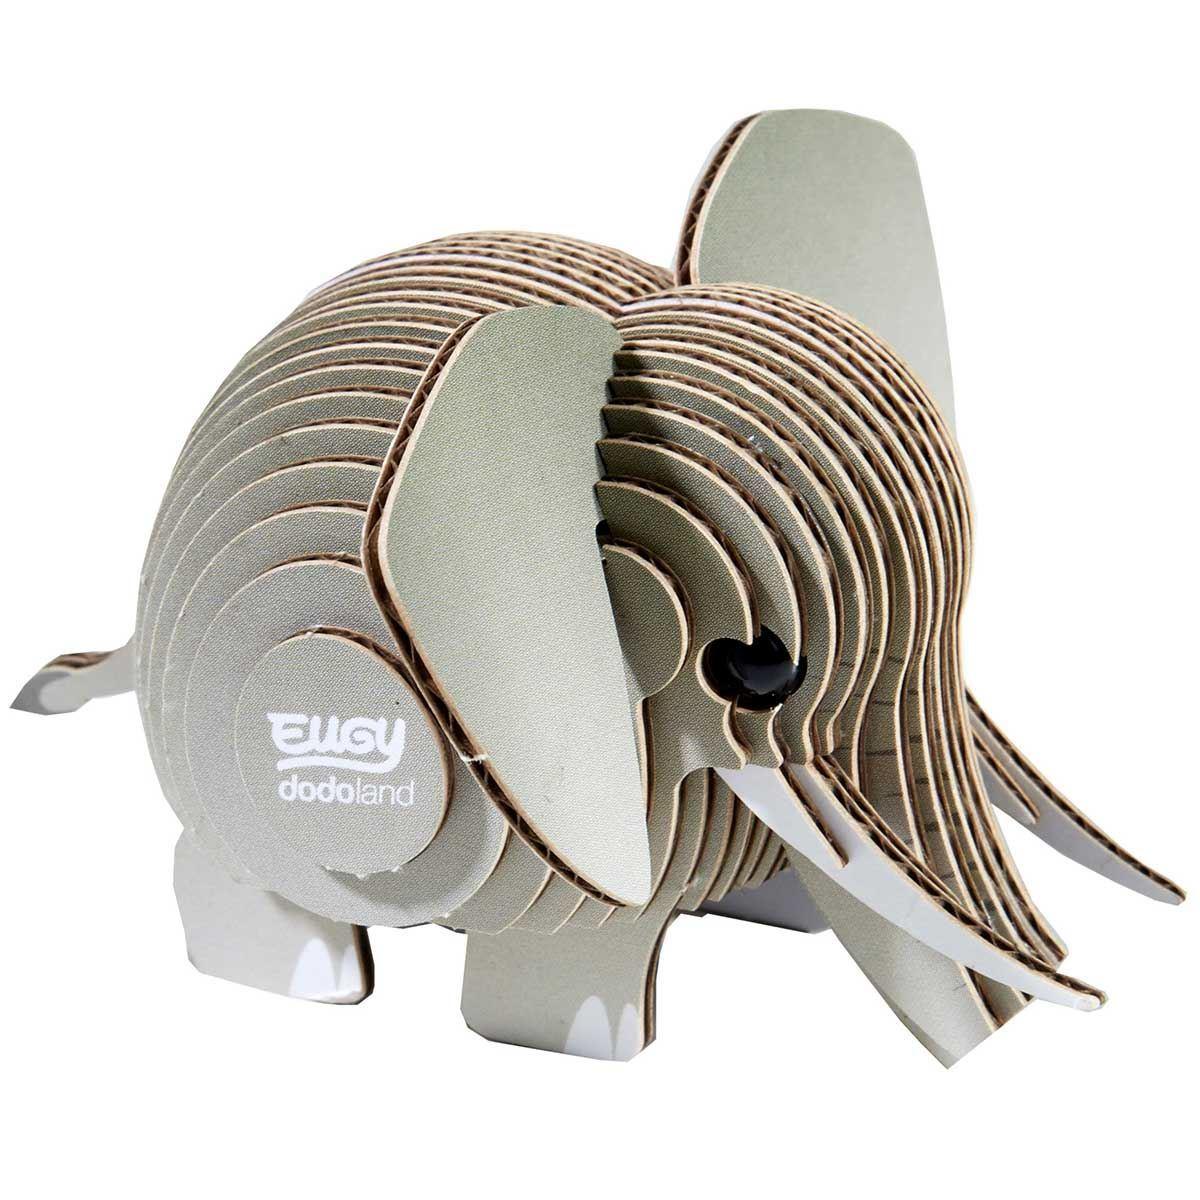 Cardboard model of a grey elephant.